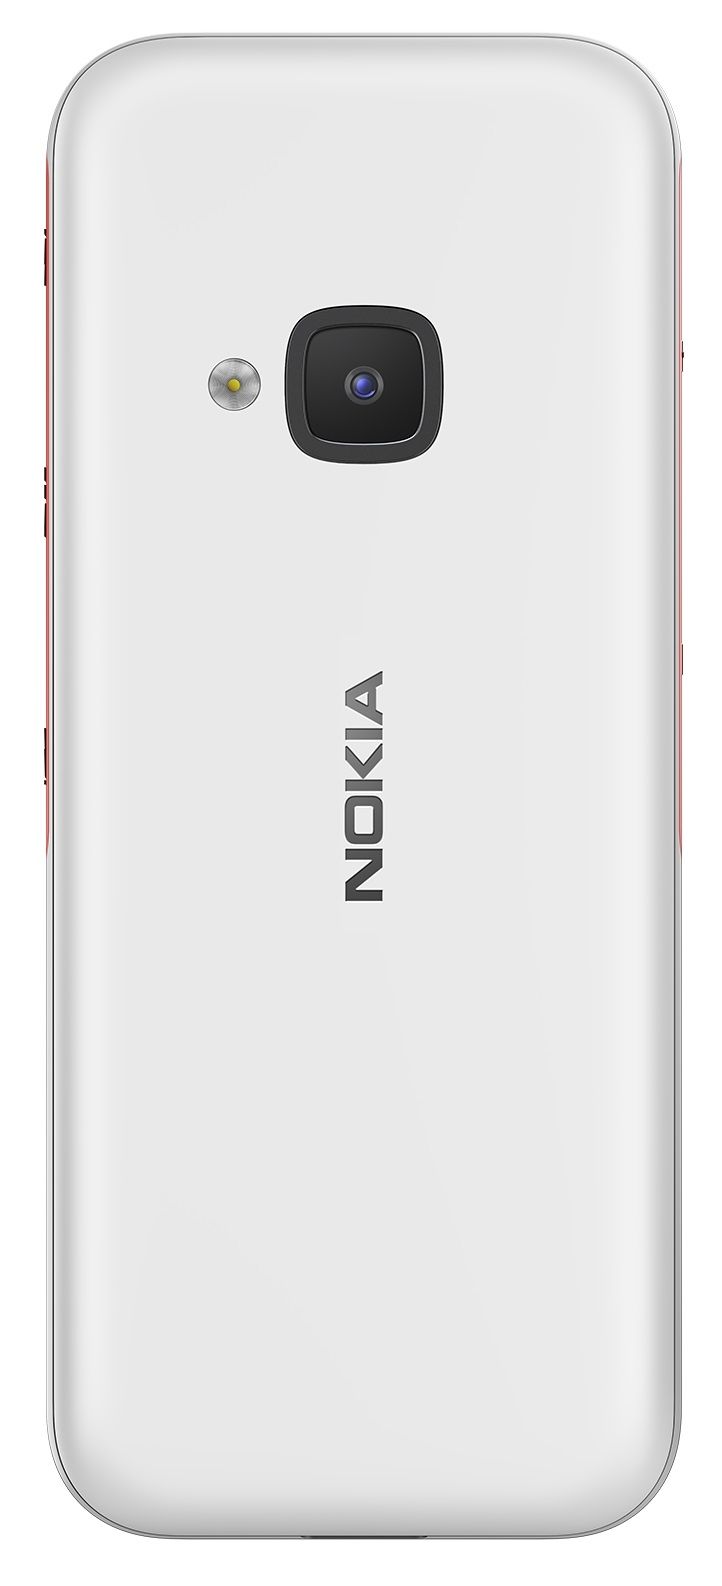 Акция на Мобільний телефон Nokia 5310 2020 DualSim White/Red от Територія твоєї техніки - 2